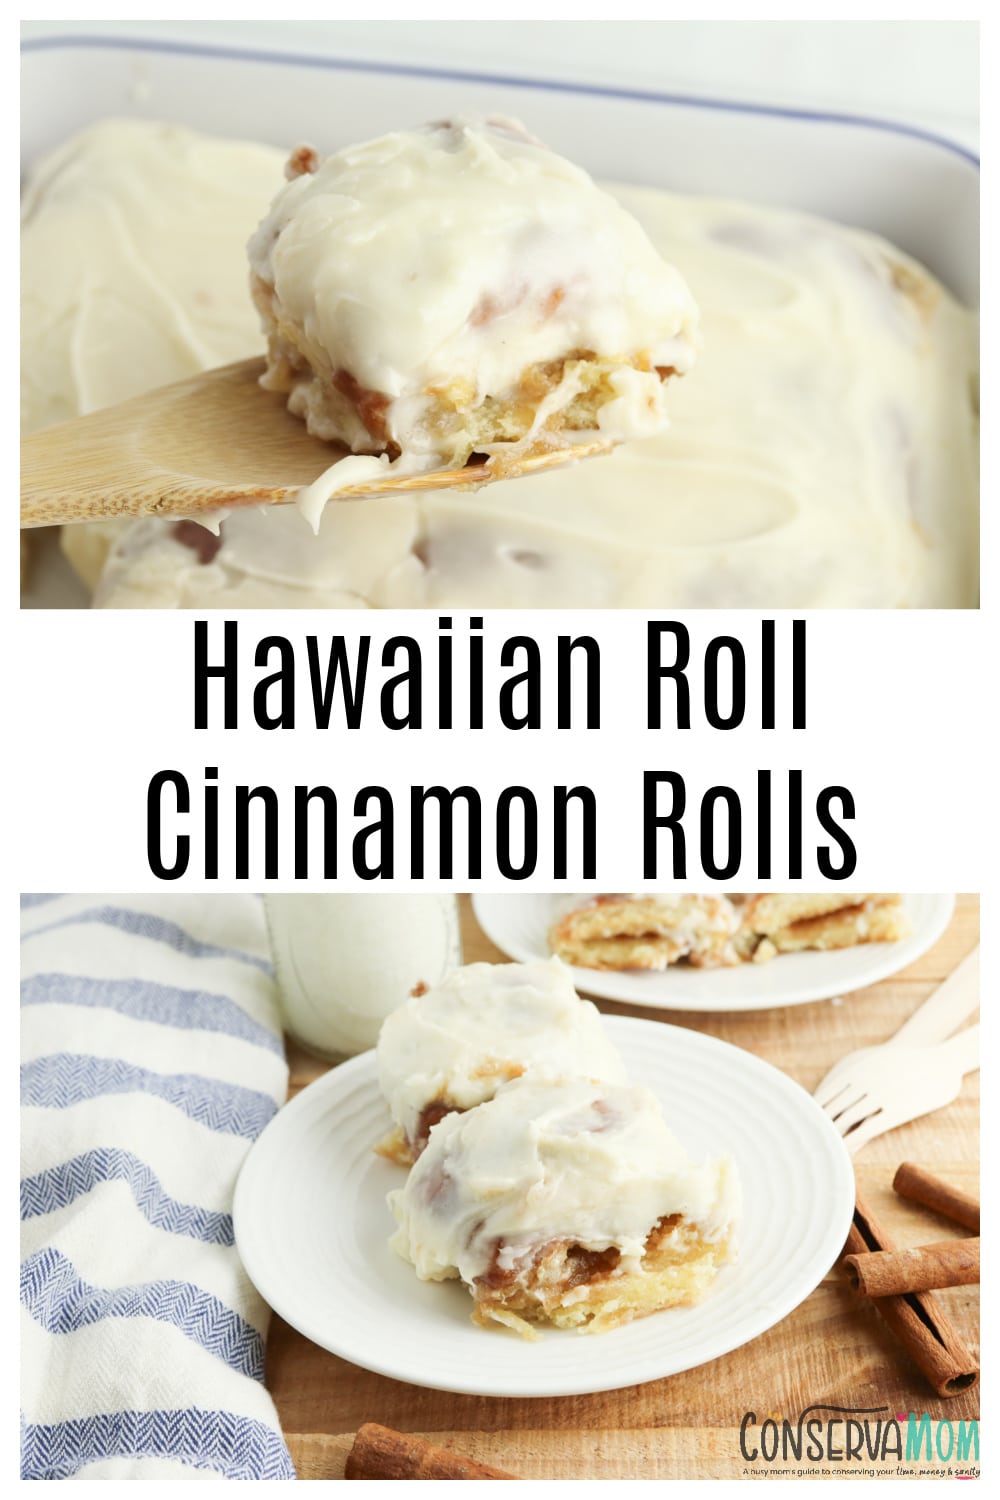 Hawaiian Roll Cinnamon Rolls